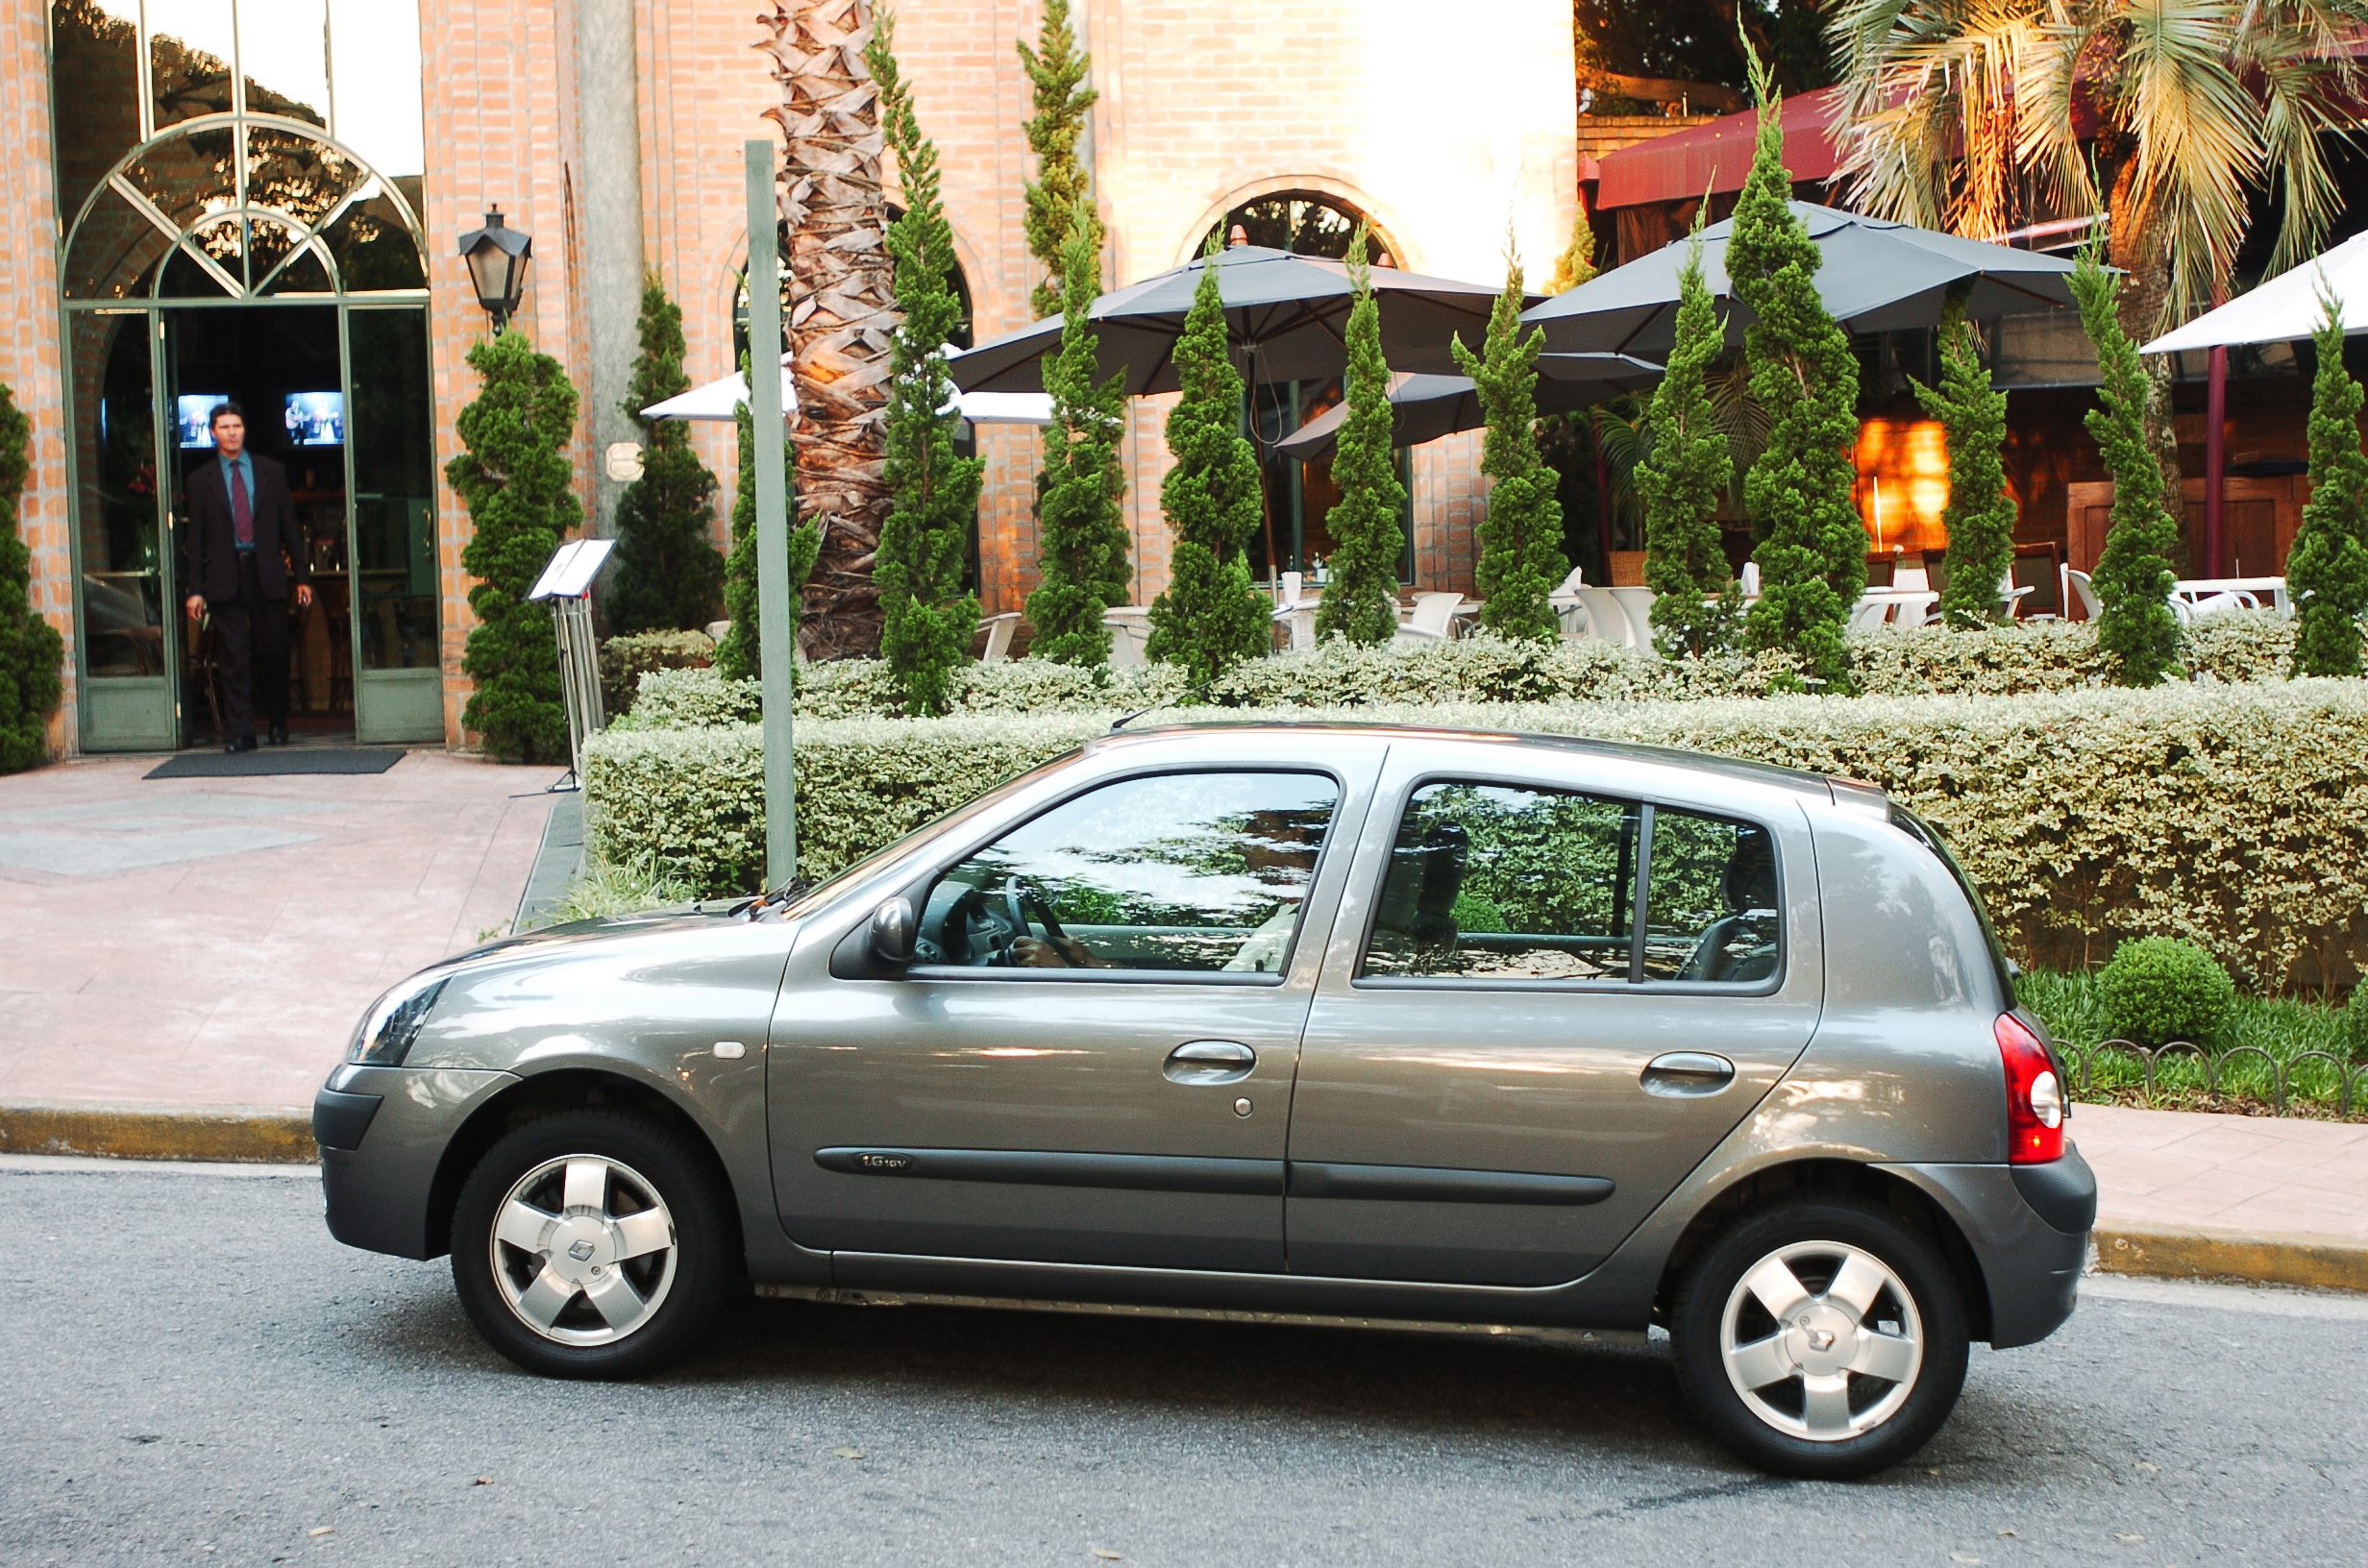 Clio 1.6 16V Hi-flex Privilège, modelo 2005 da Renault, testado pela revista Quatro Rodas.